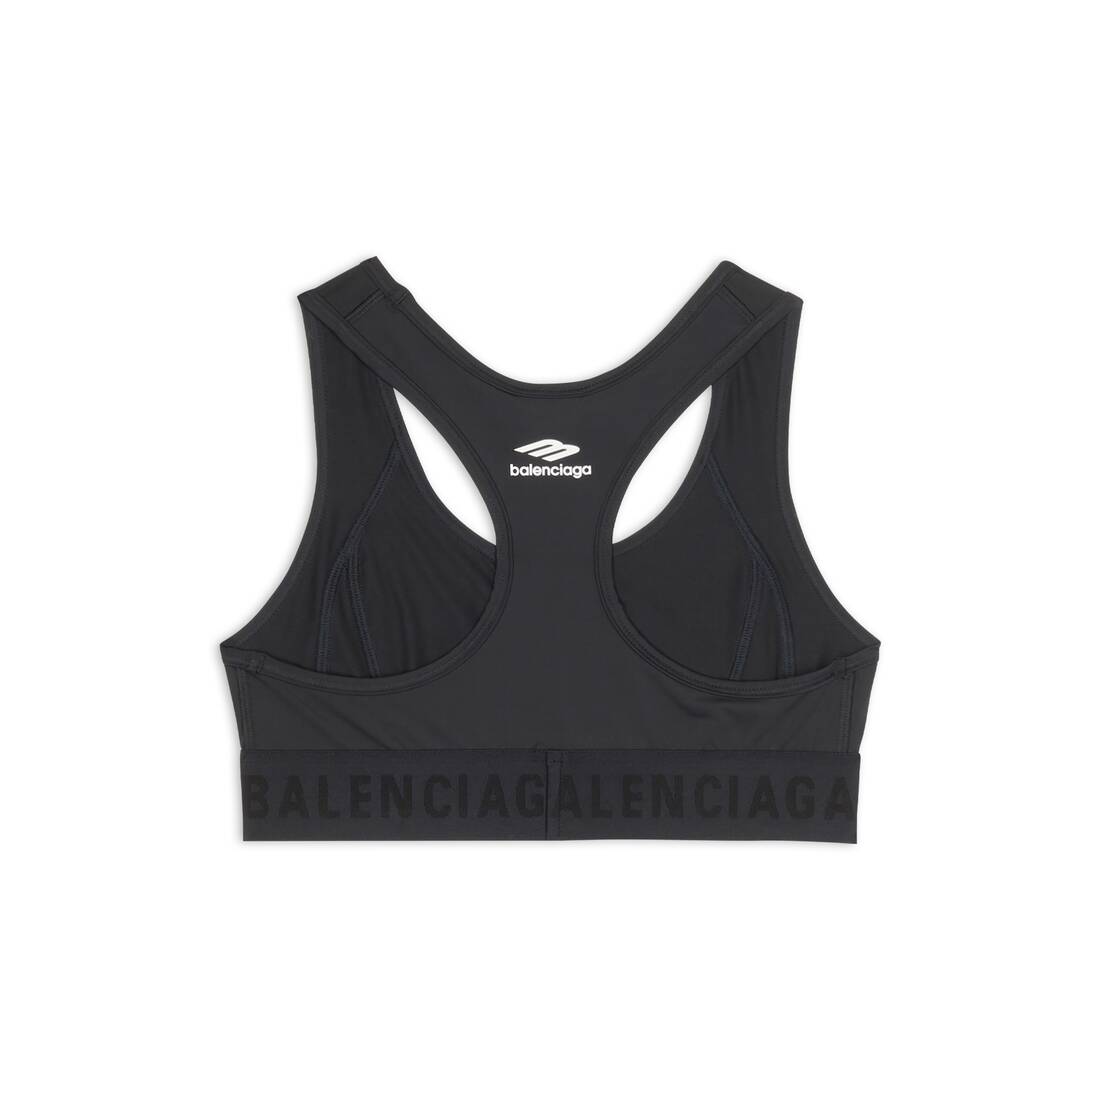 Sports bra with logo Balenciaga - IetpShops Denmark